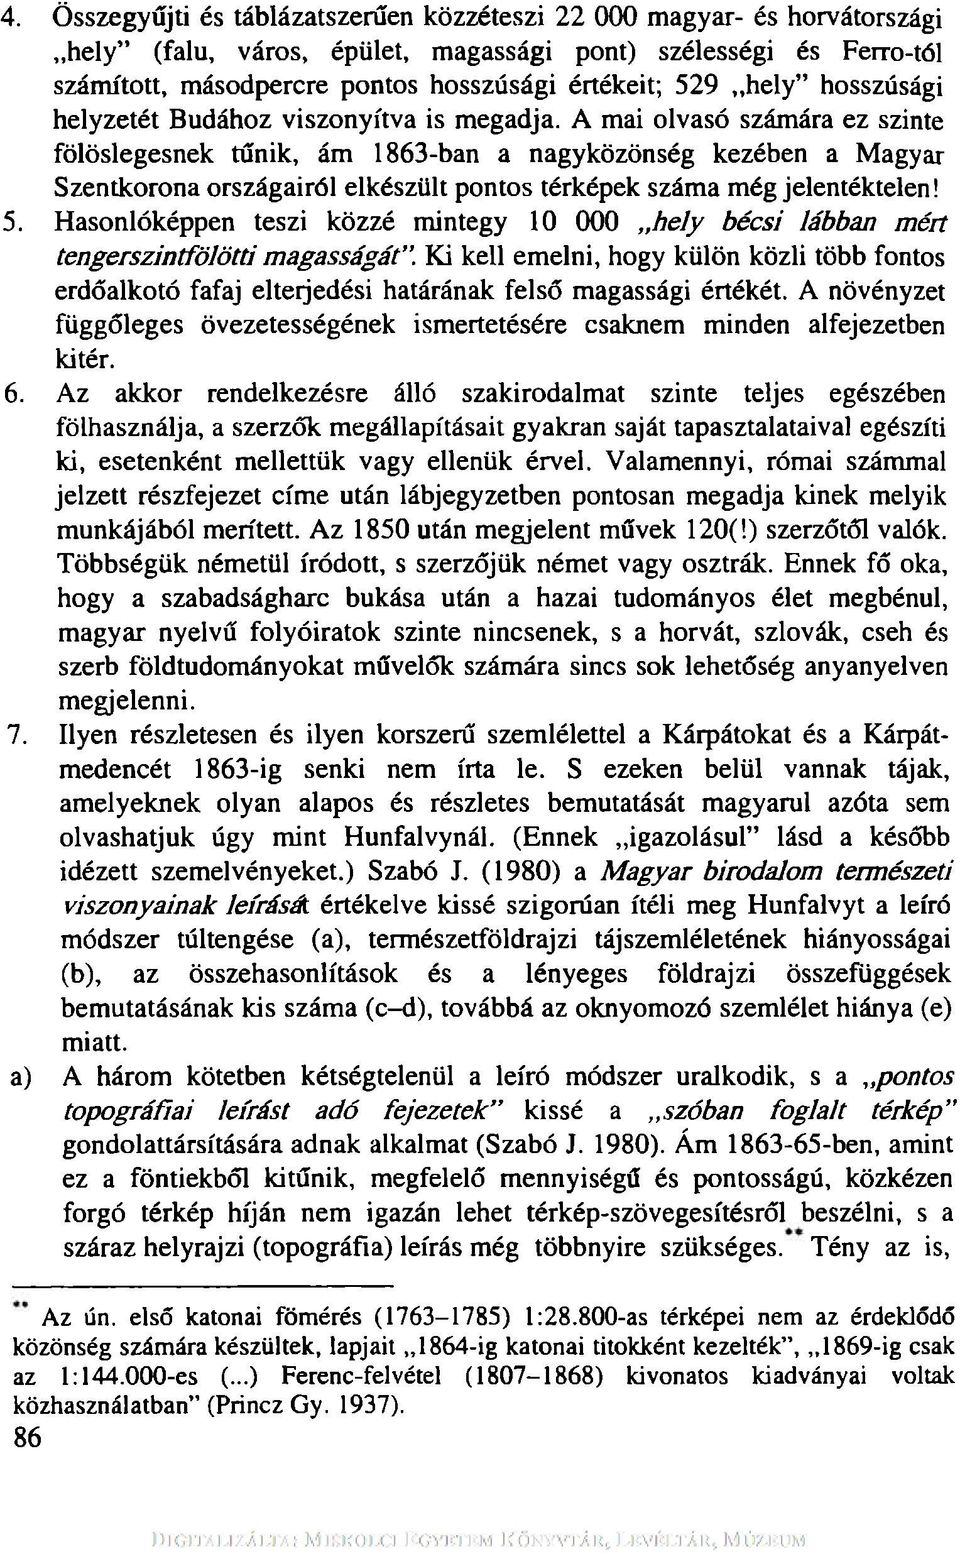 A mai olvasó számára ez szinte fölöslegesnek tűnik, ám 1863-ban a nagyközönség kezében a Magyar Szentkorona országairól elkészült pontos térképek száma még jelentéktelen! 5.